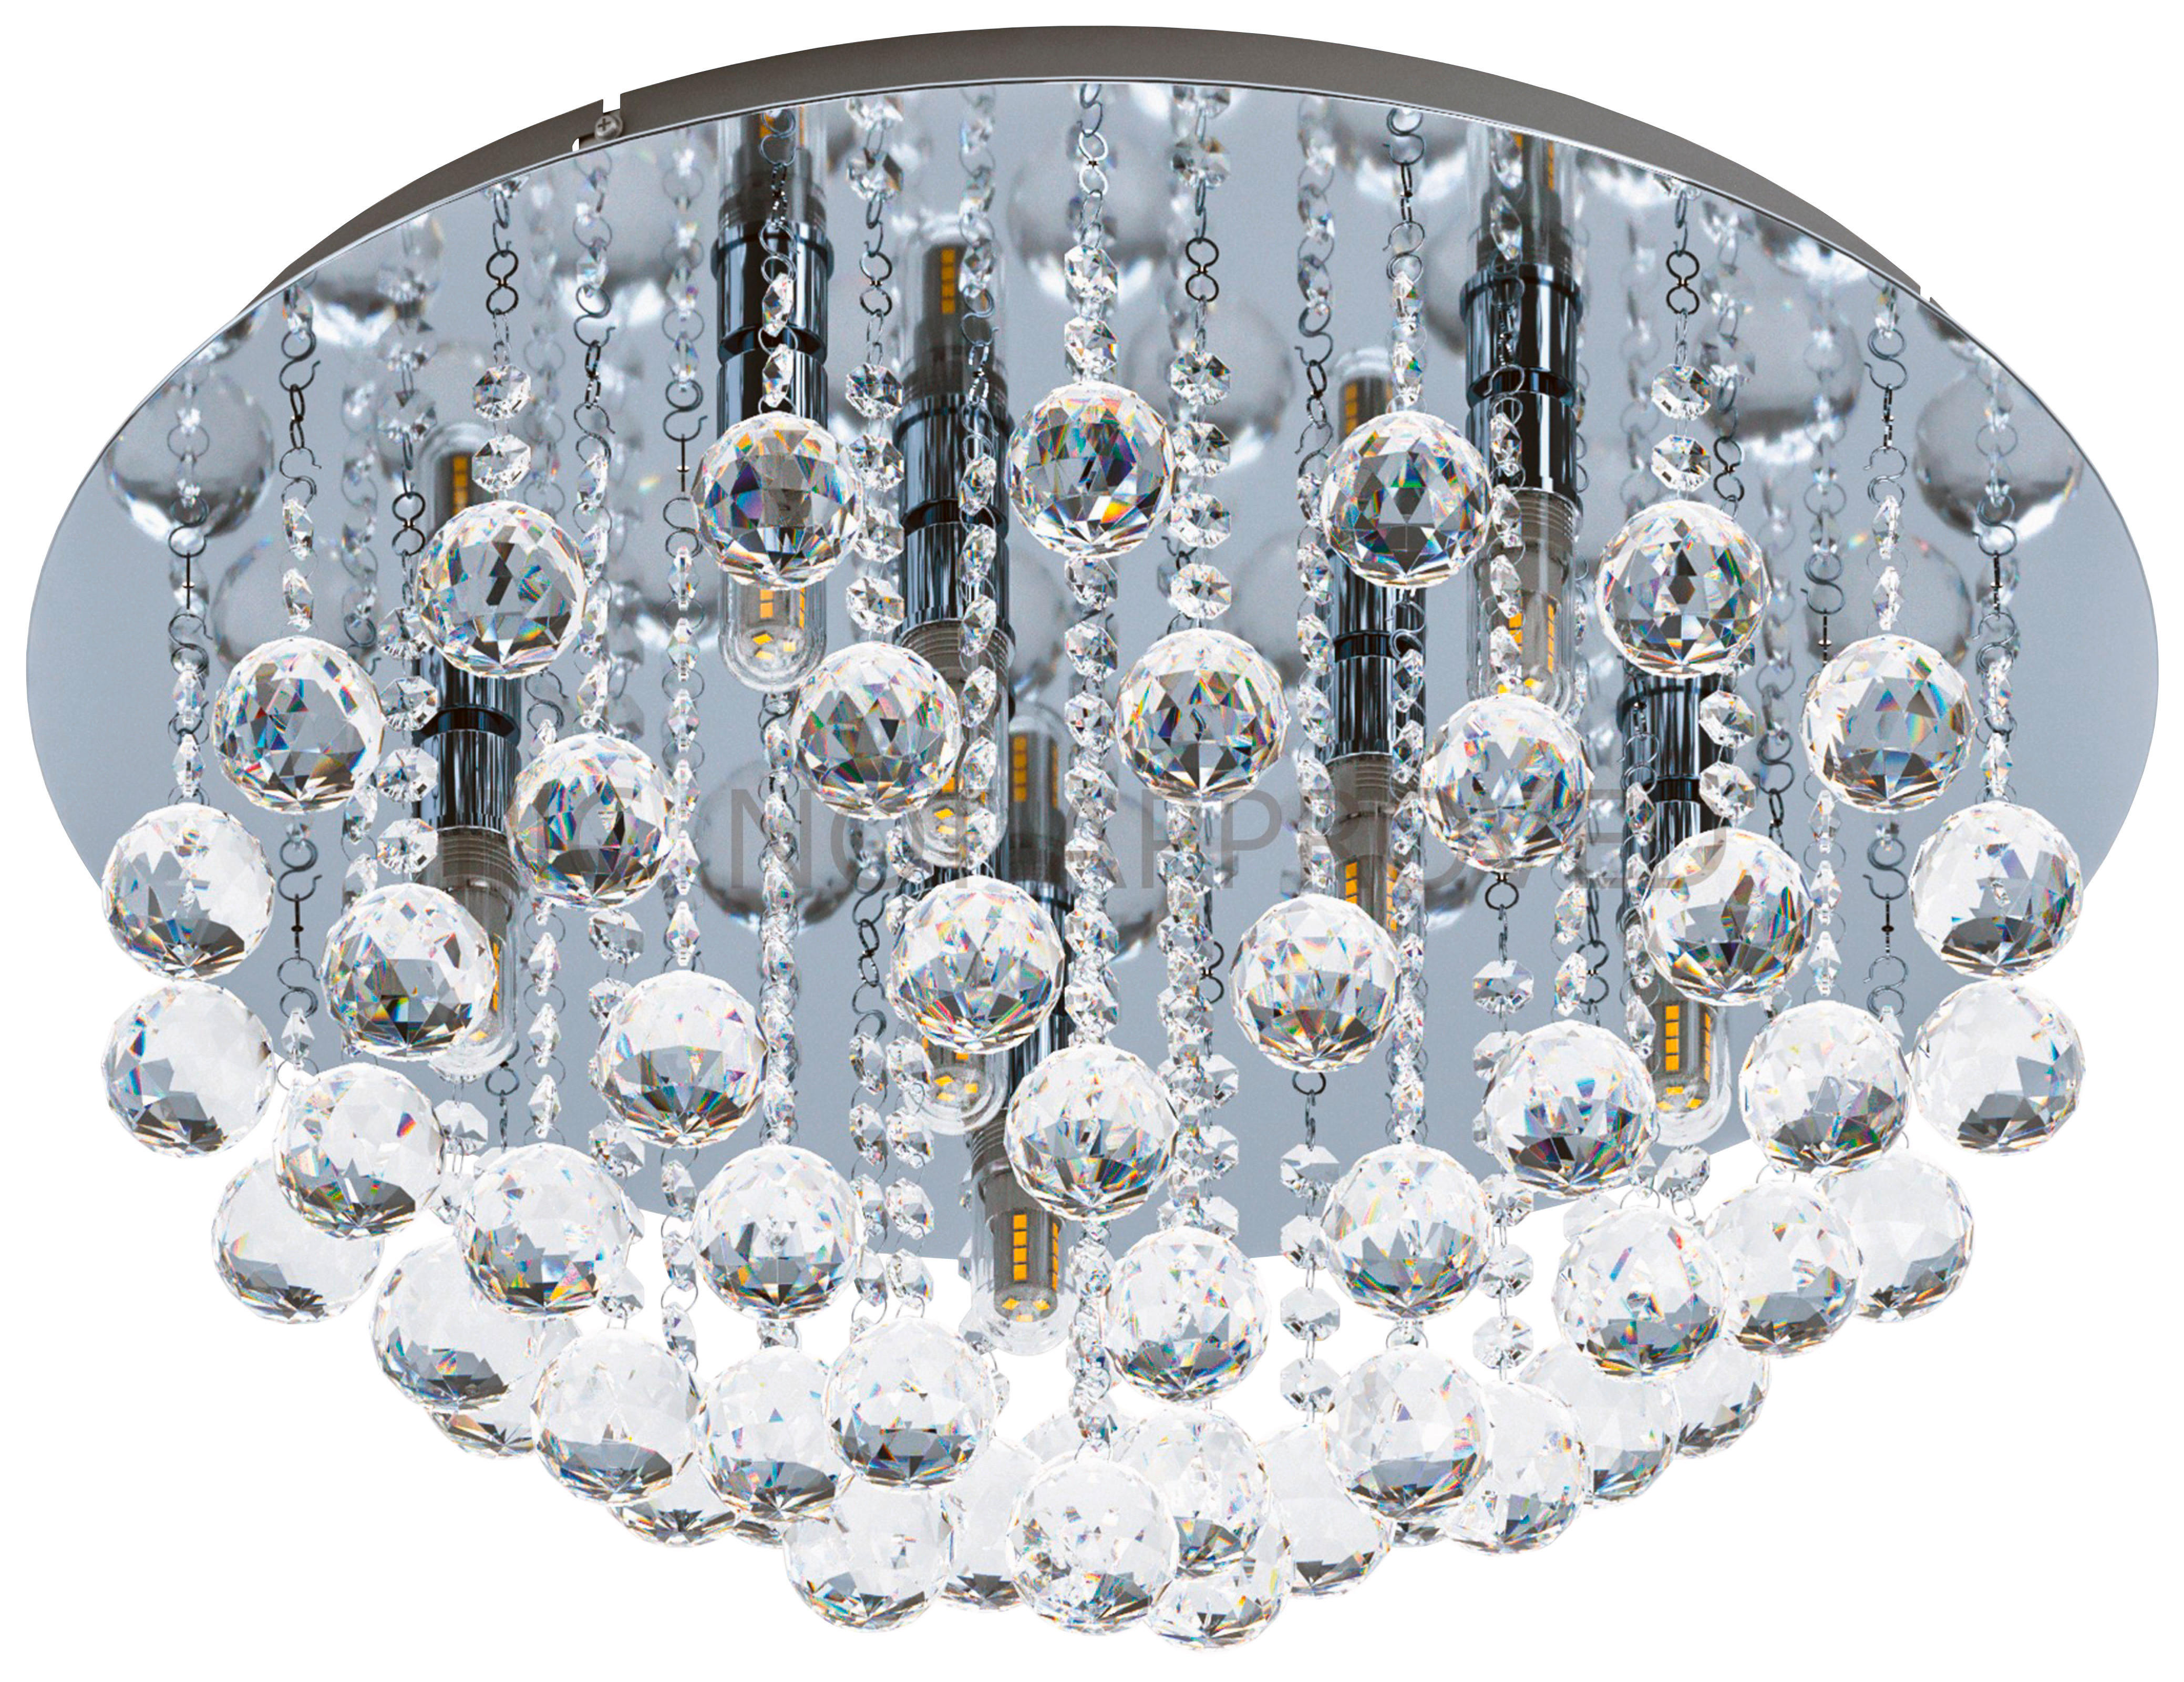 LED-DECKENLEUCHTE Almonte  50 cm  - LIFESTYLE, Glas/Metall (50cm) - Eglo